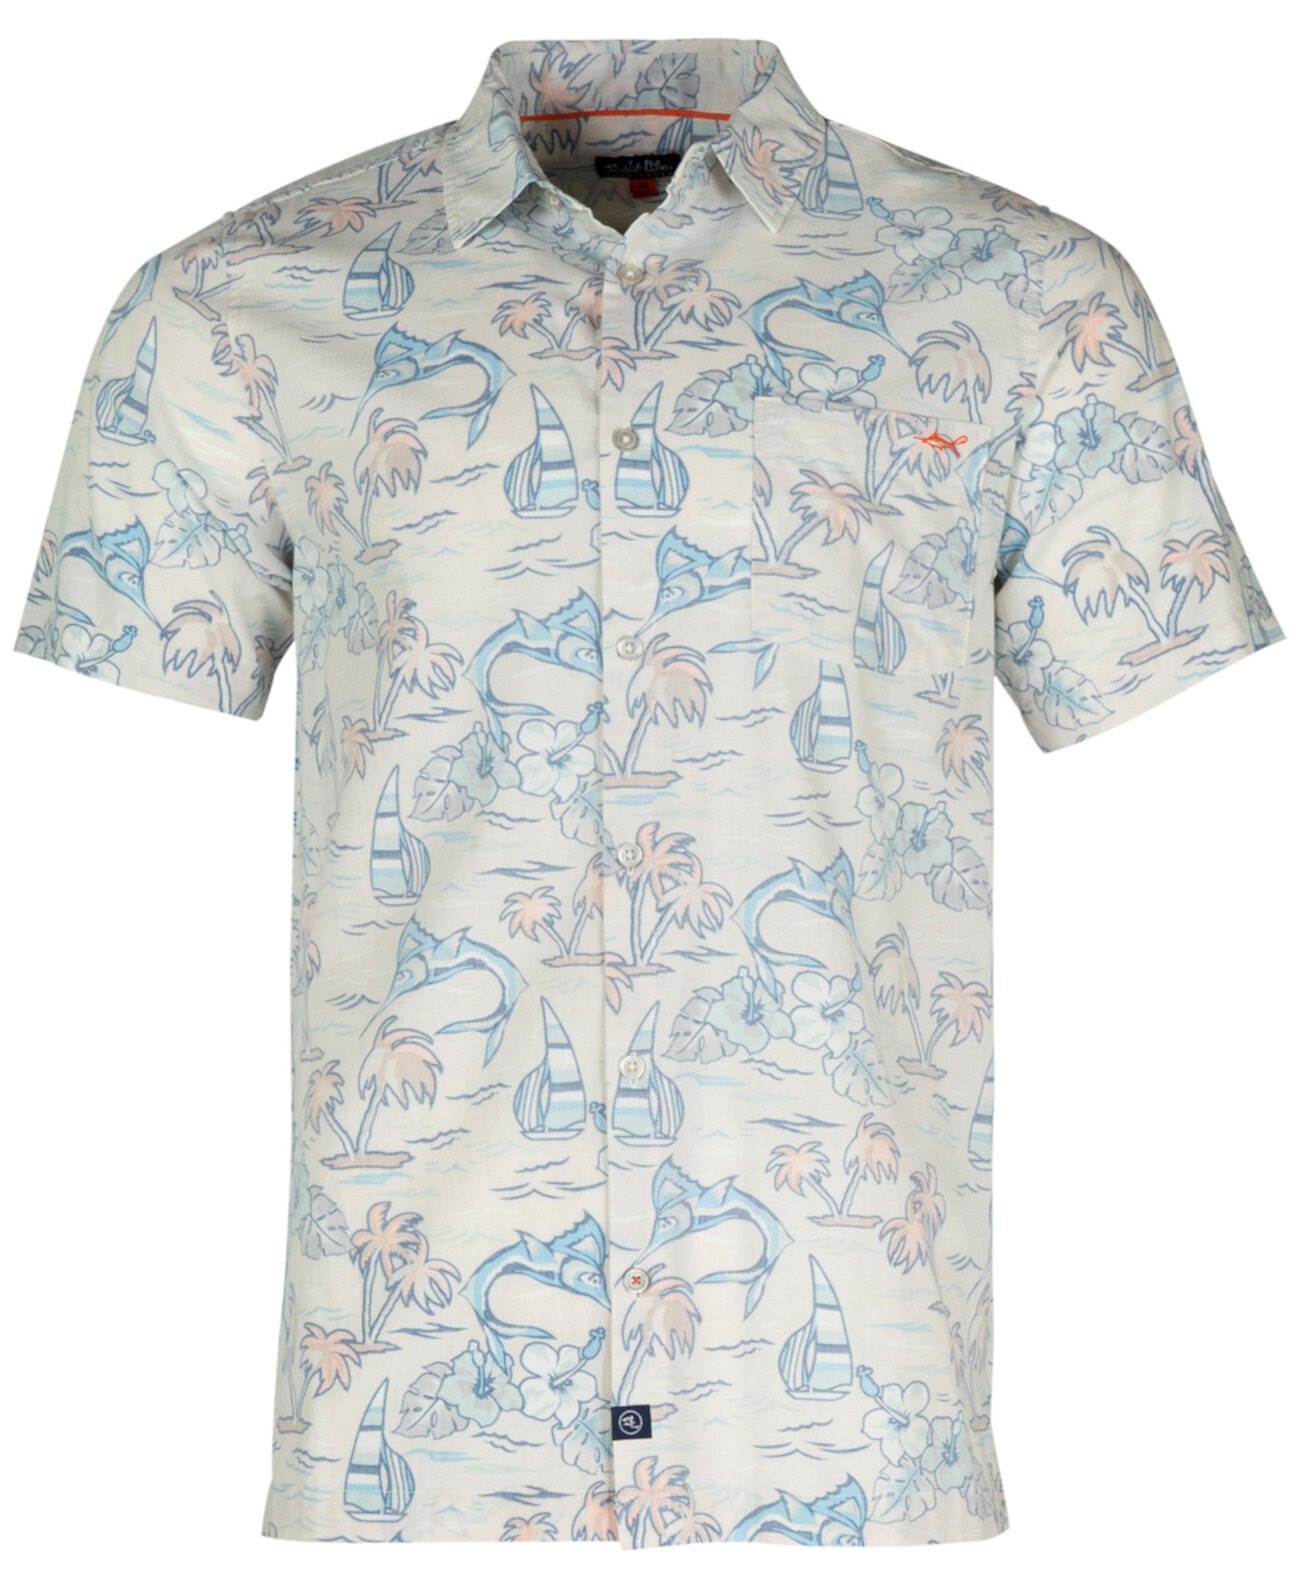 Men's Ocean Drift Graphic Print Short-Sleeve Button-Up Shirt Salt Life